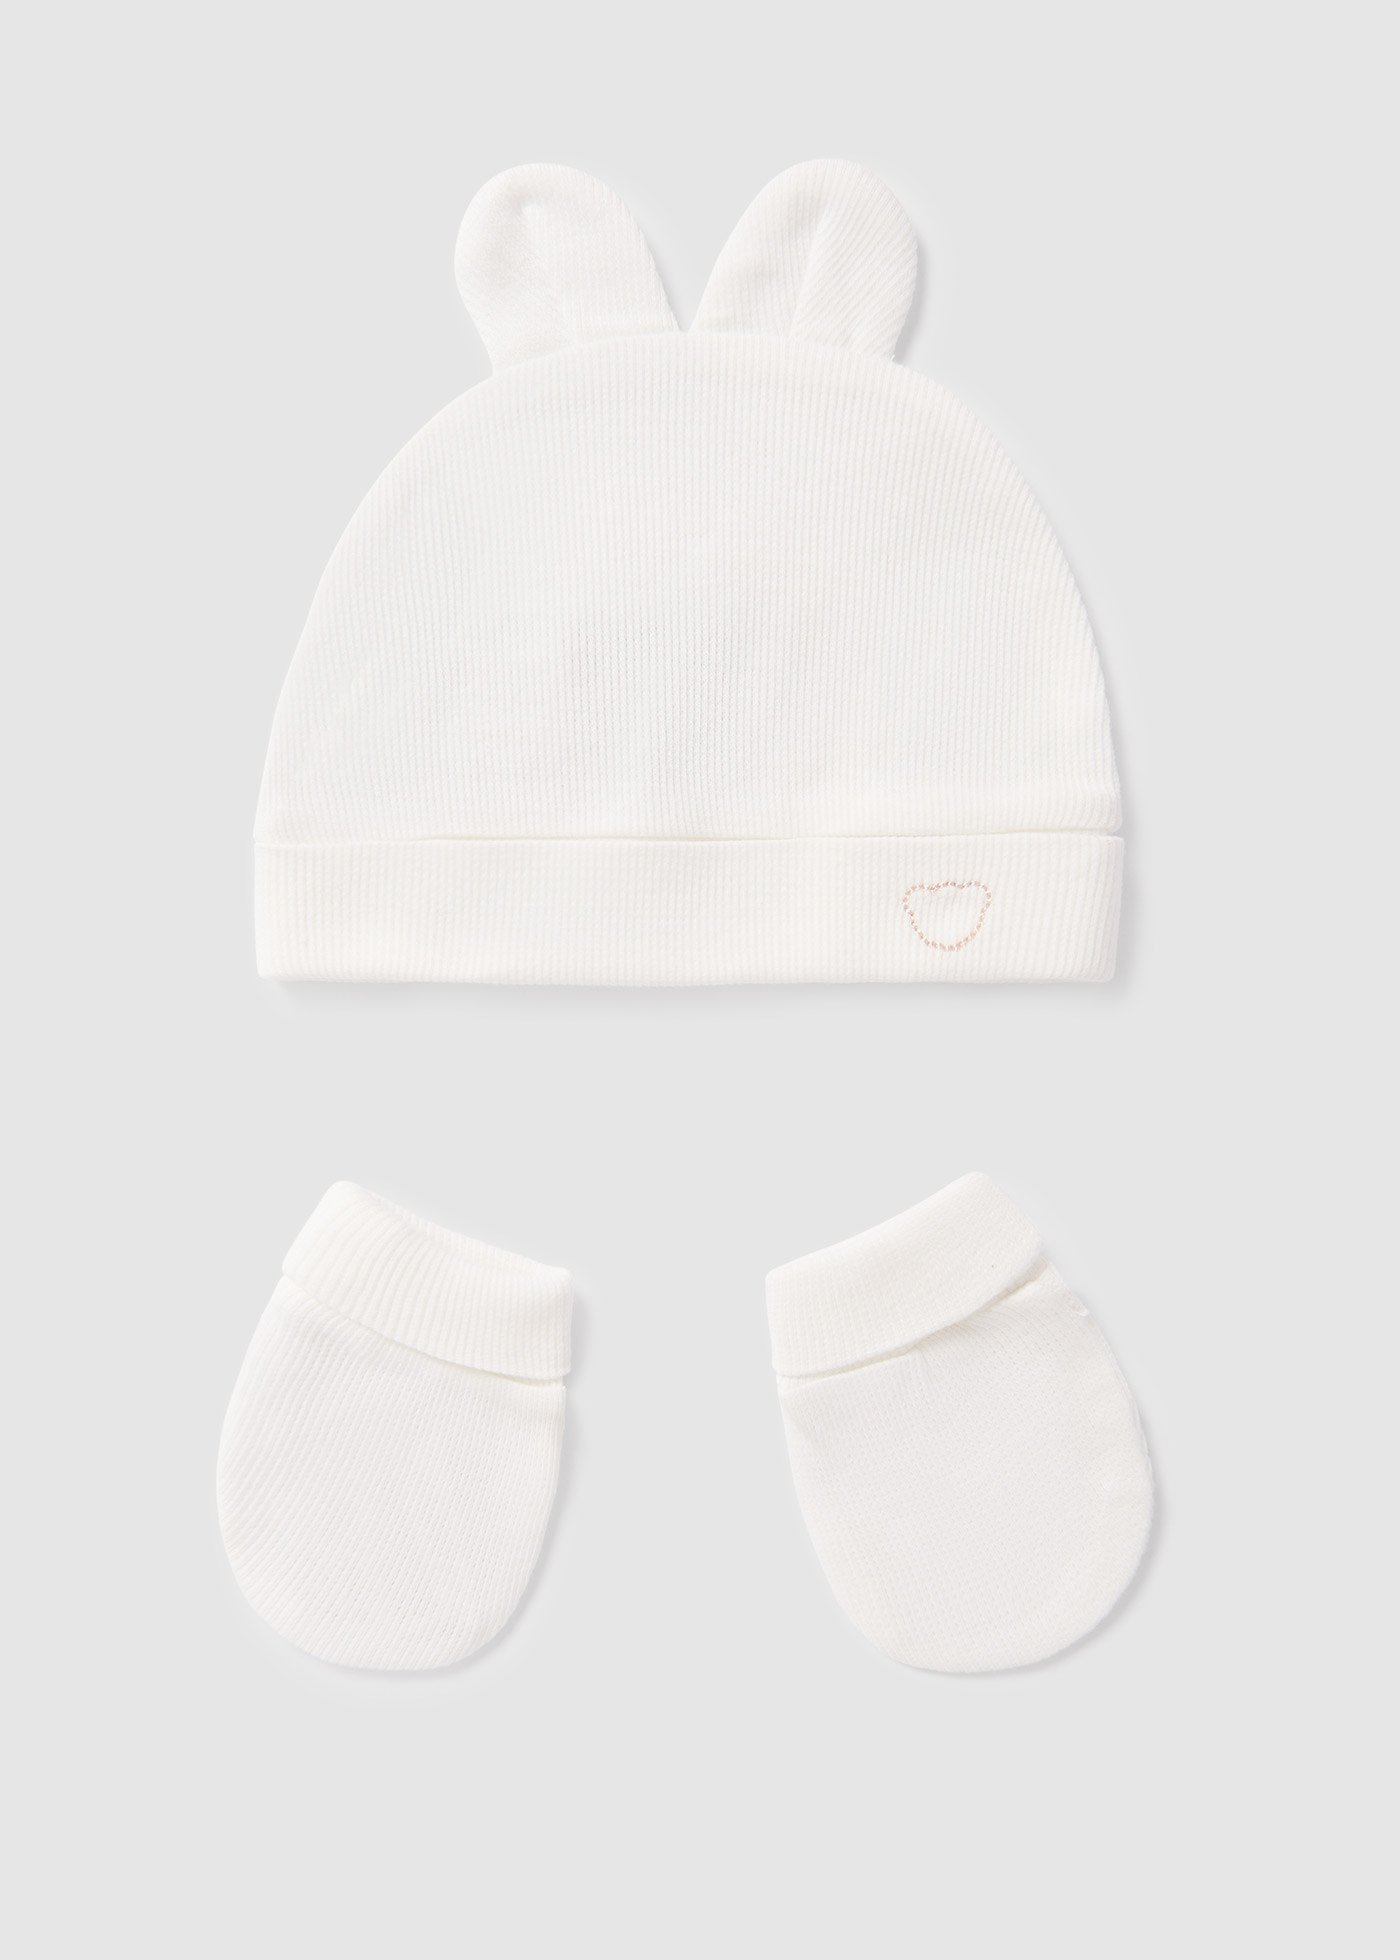 Komplet czapka i rękawiczki Better Cotton dla niemowlęcia